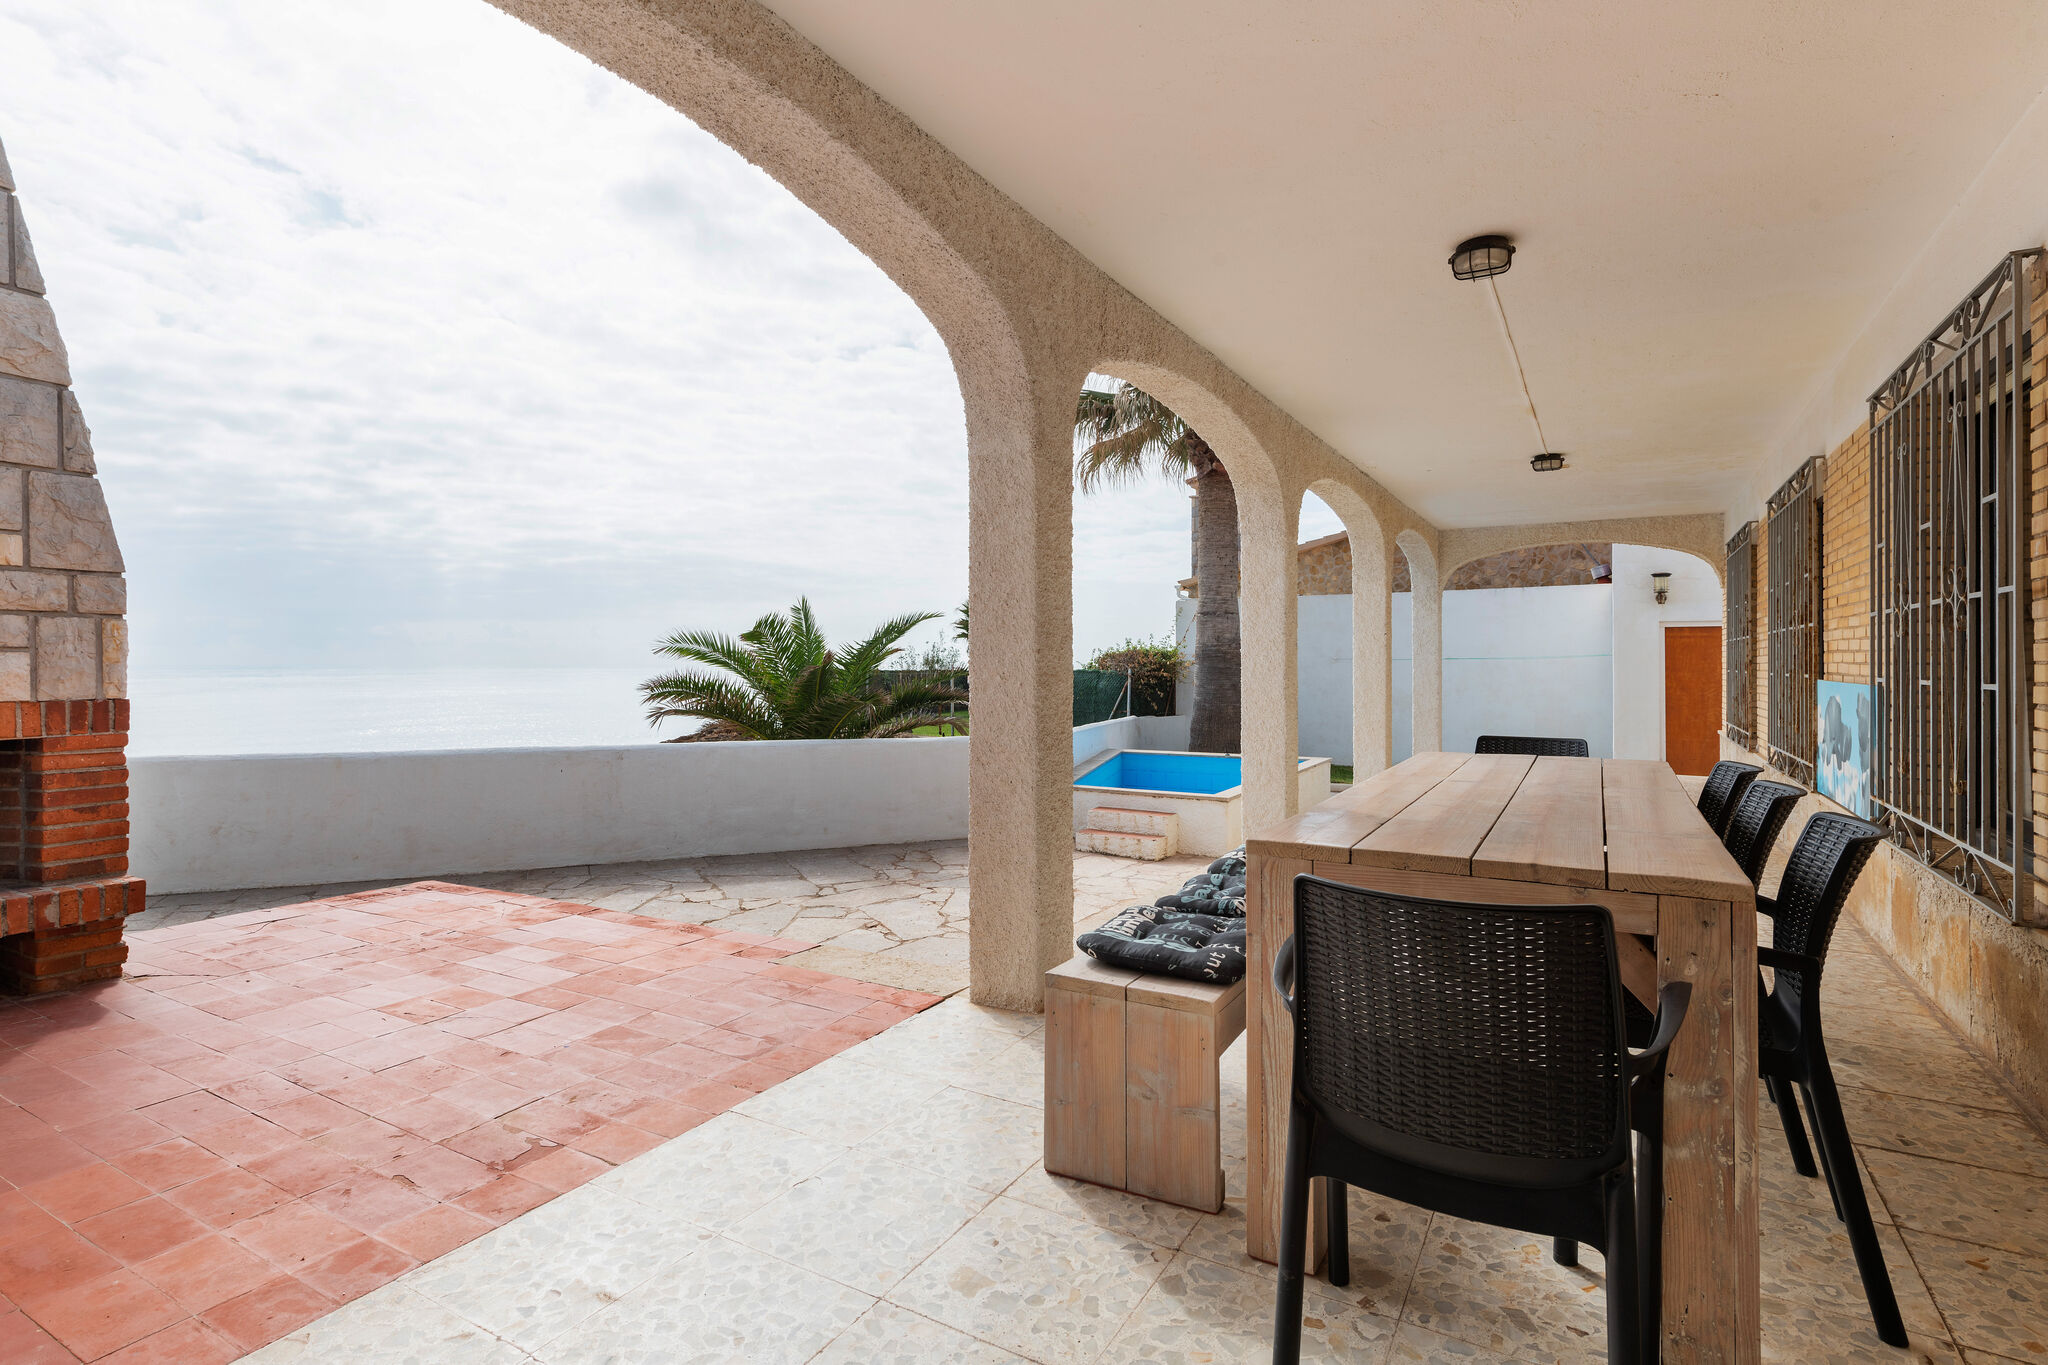 Traumhaftes Ferienhaus an der spanischen Küste in Vinaros